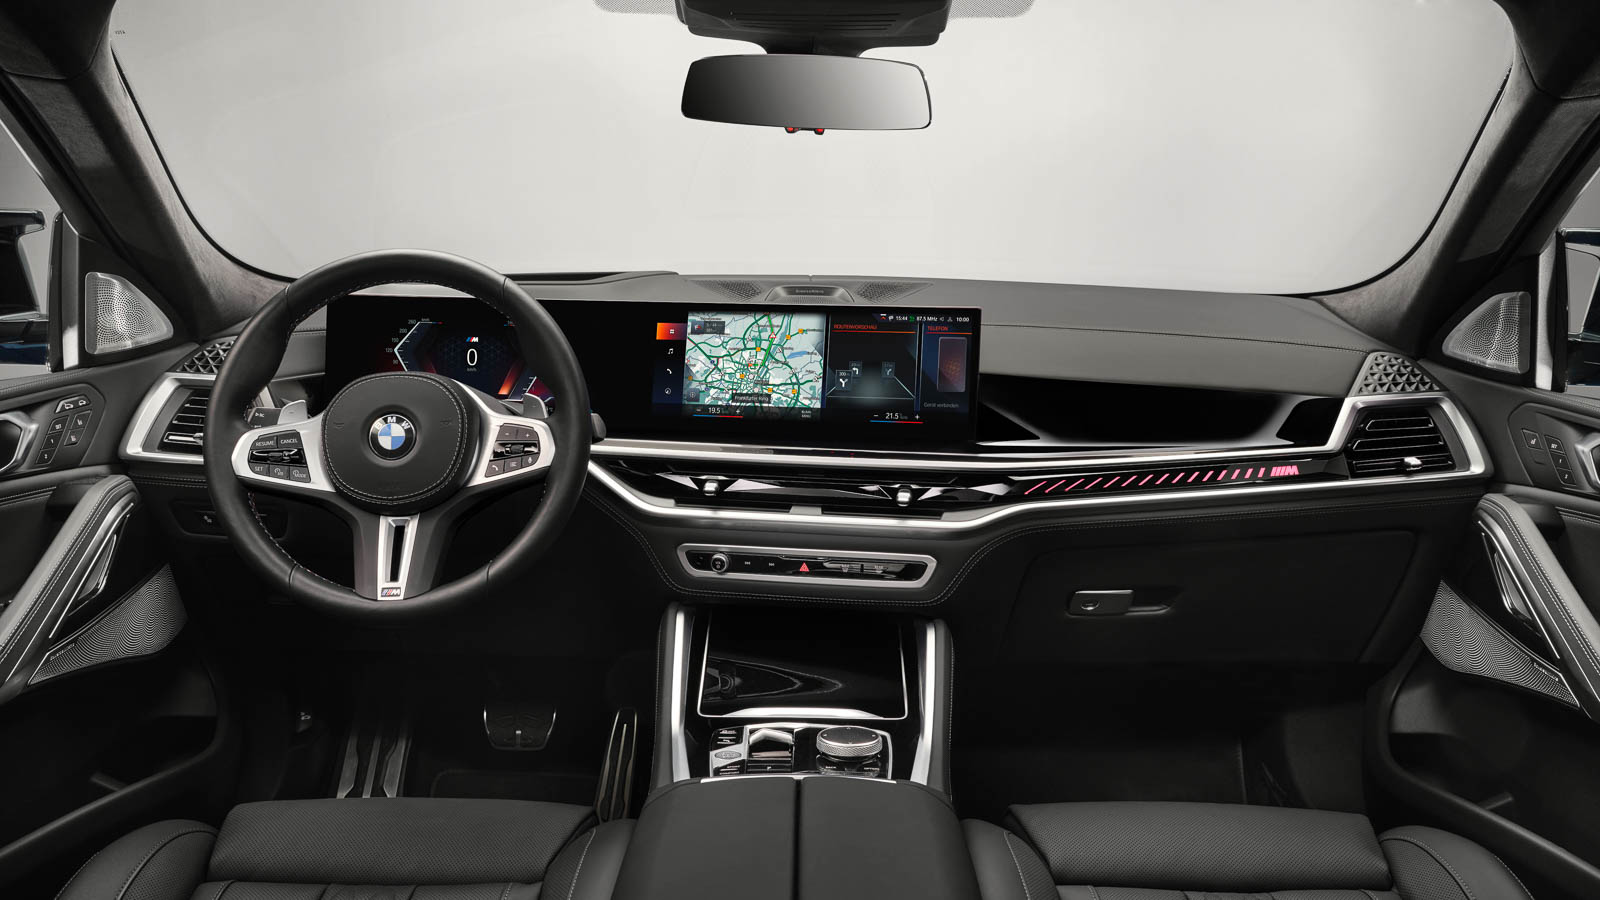 Nueva motorización híbrida ligera y diésel para los BMW X5 y X6